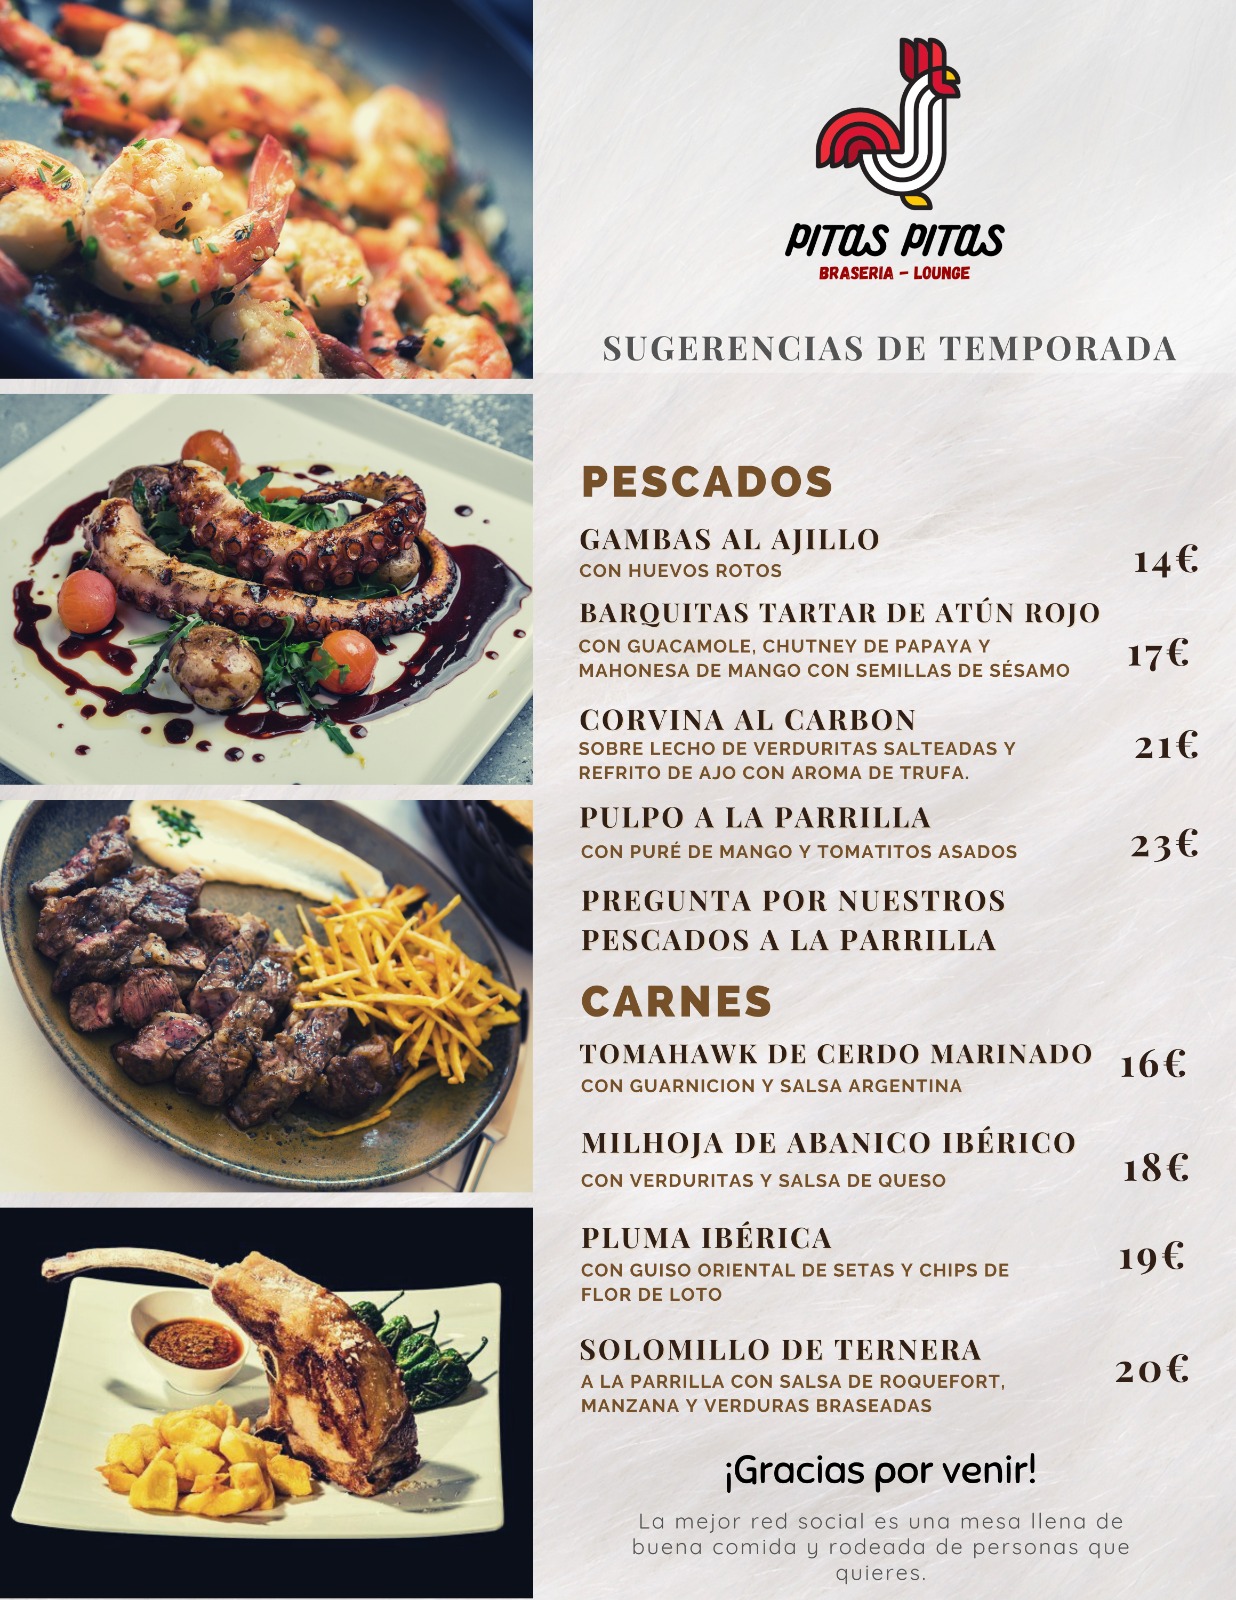 Raciones Braseria en Plasencia Restaurante Pitas Pitas 